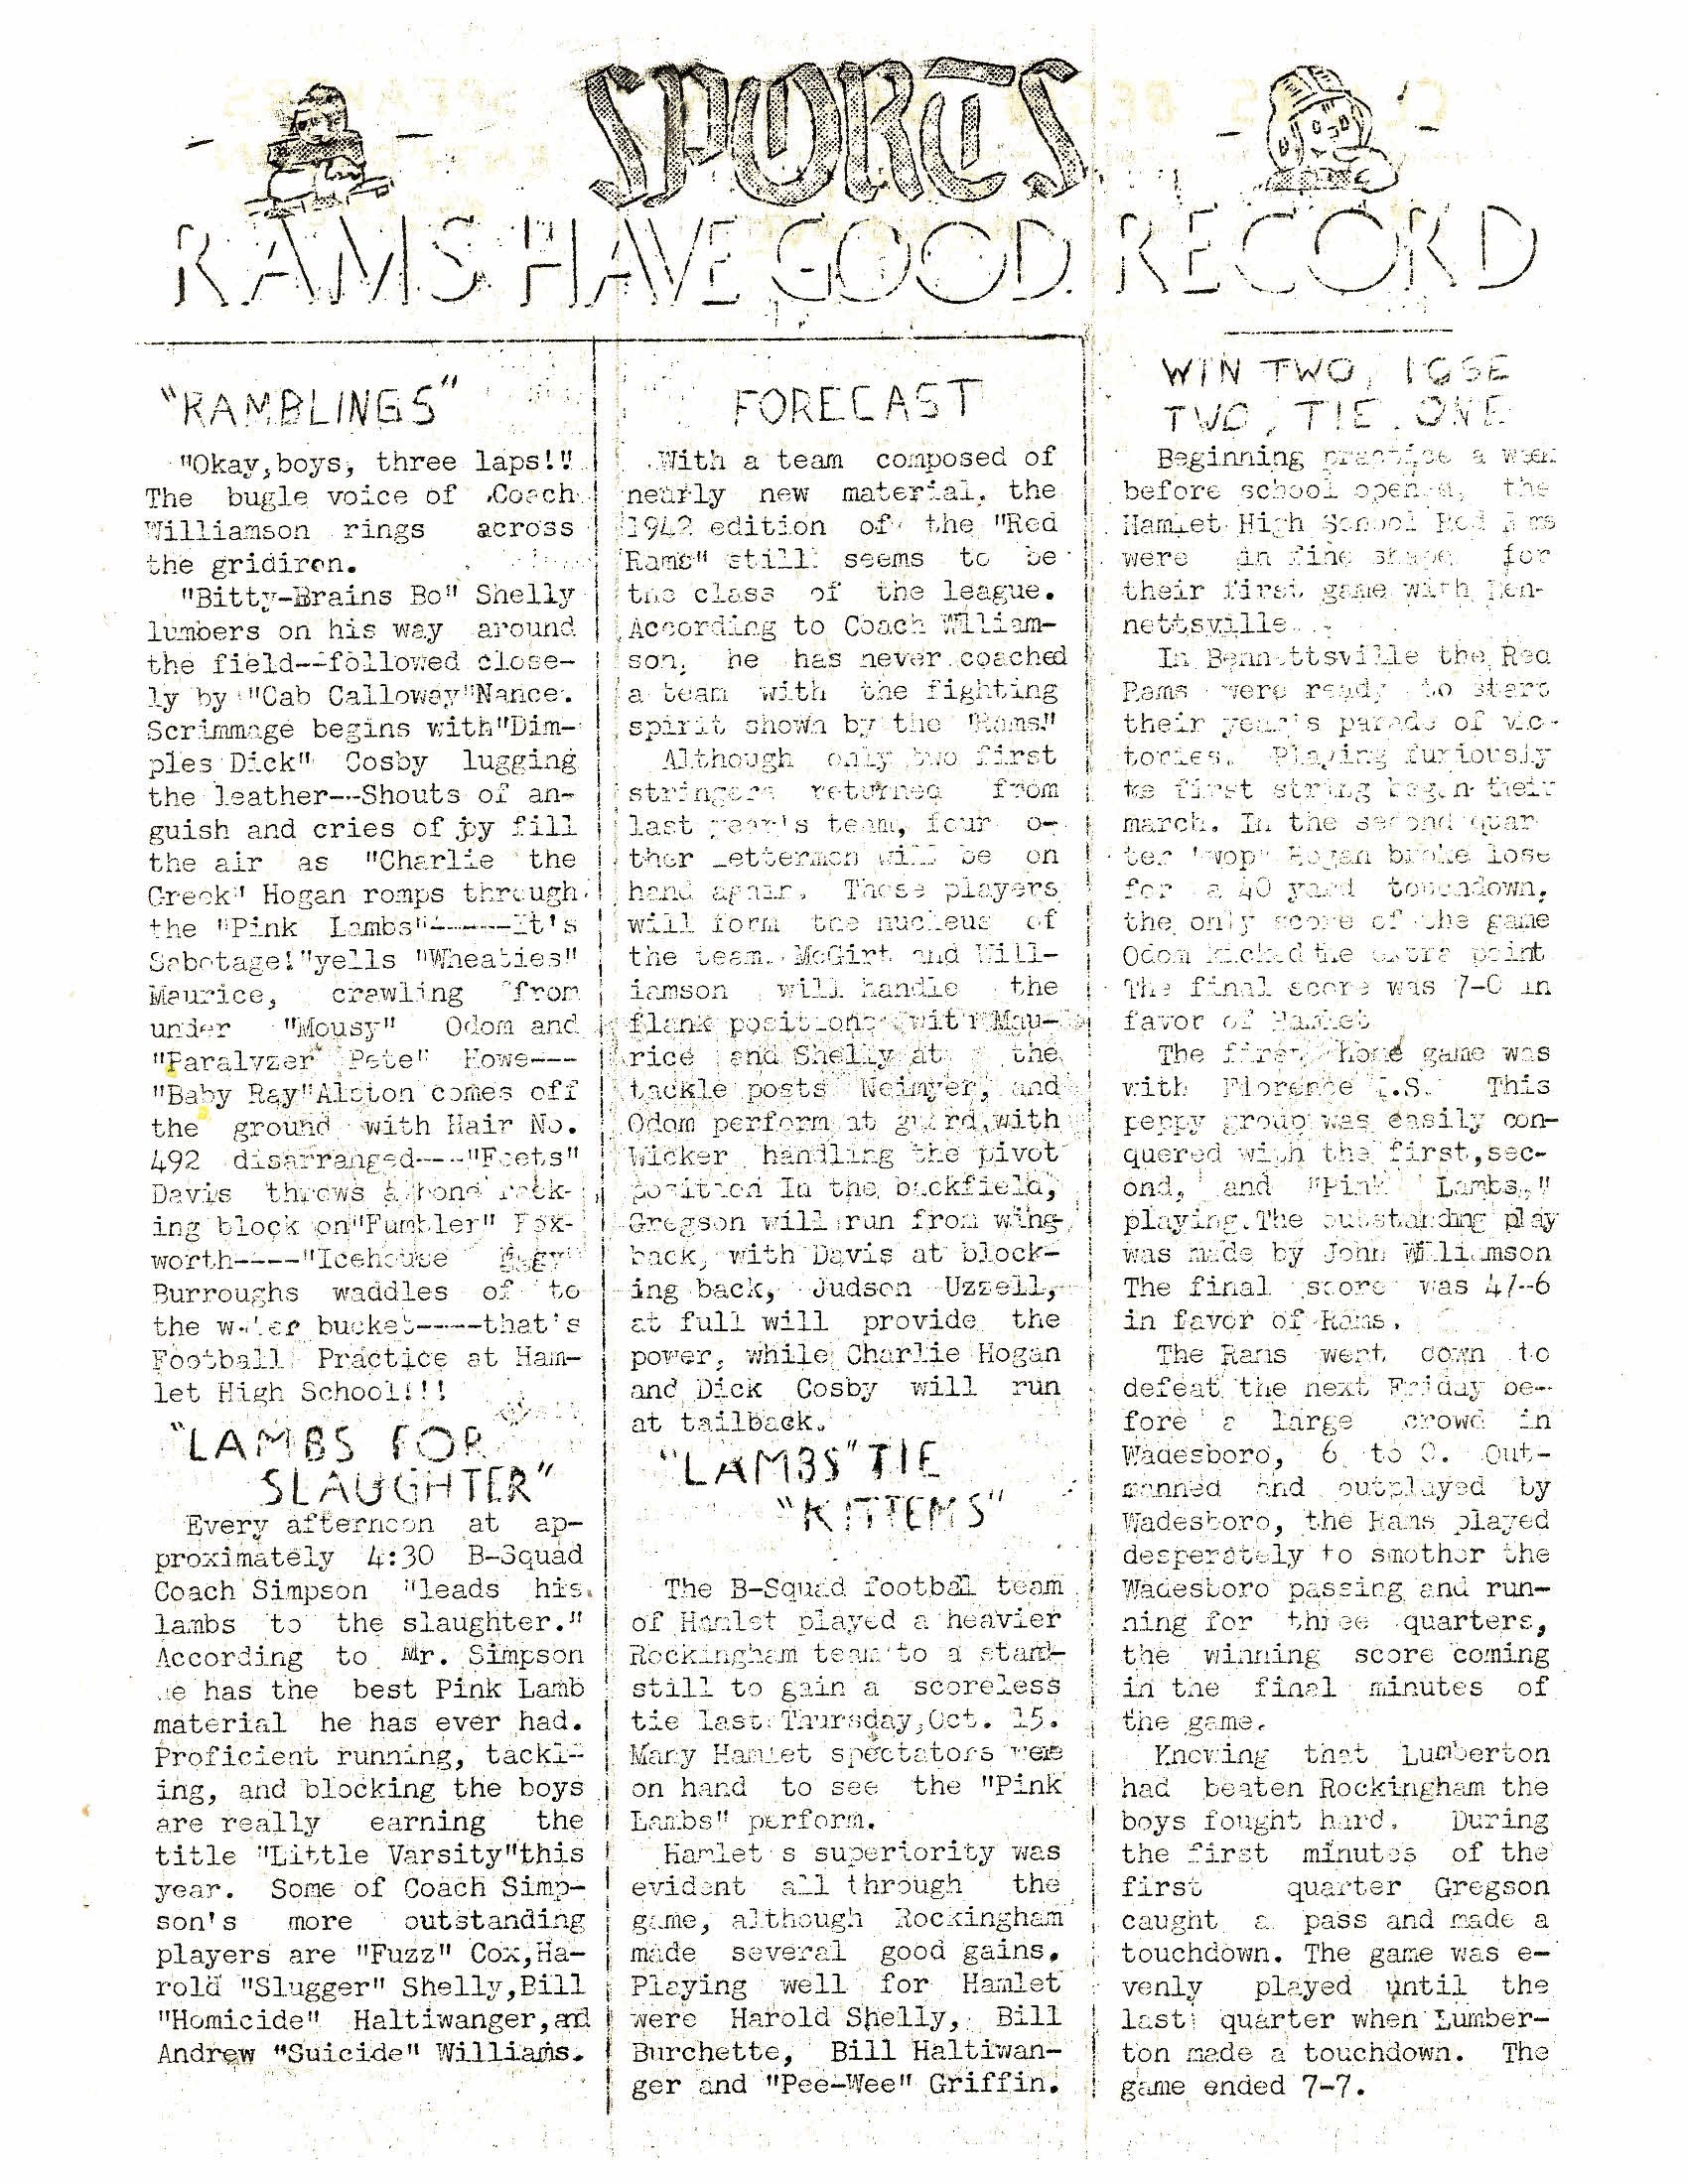 Sandspur October 21, 1941 (3).jpg